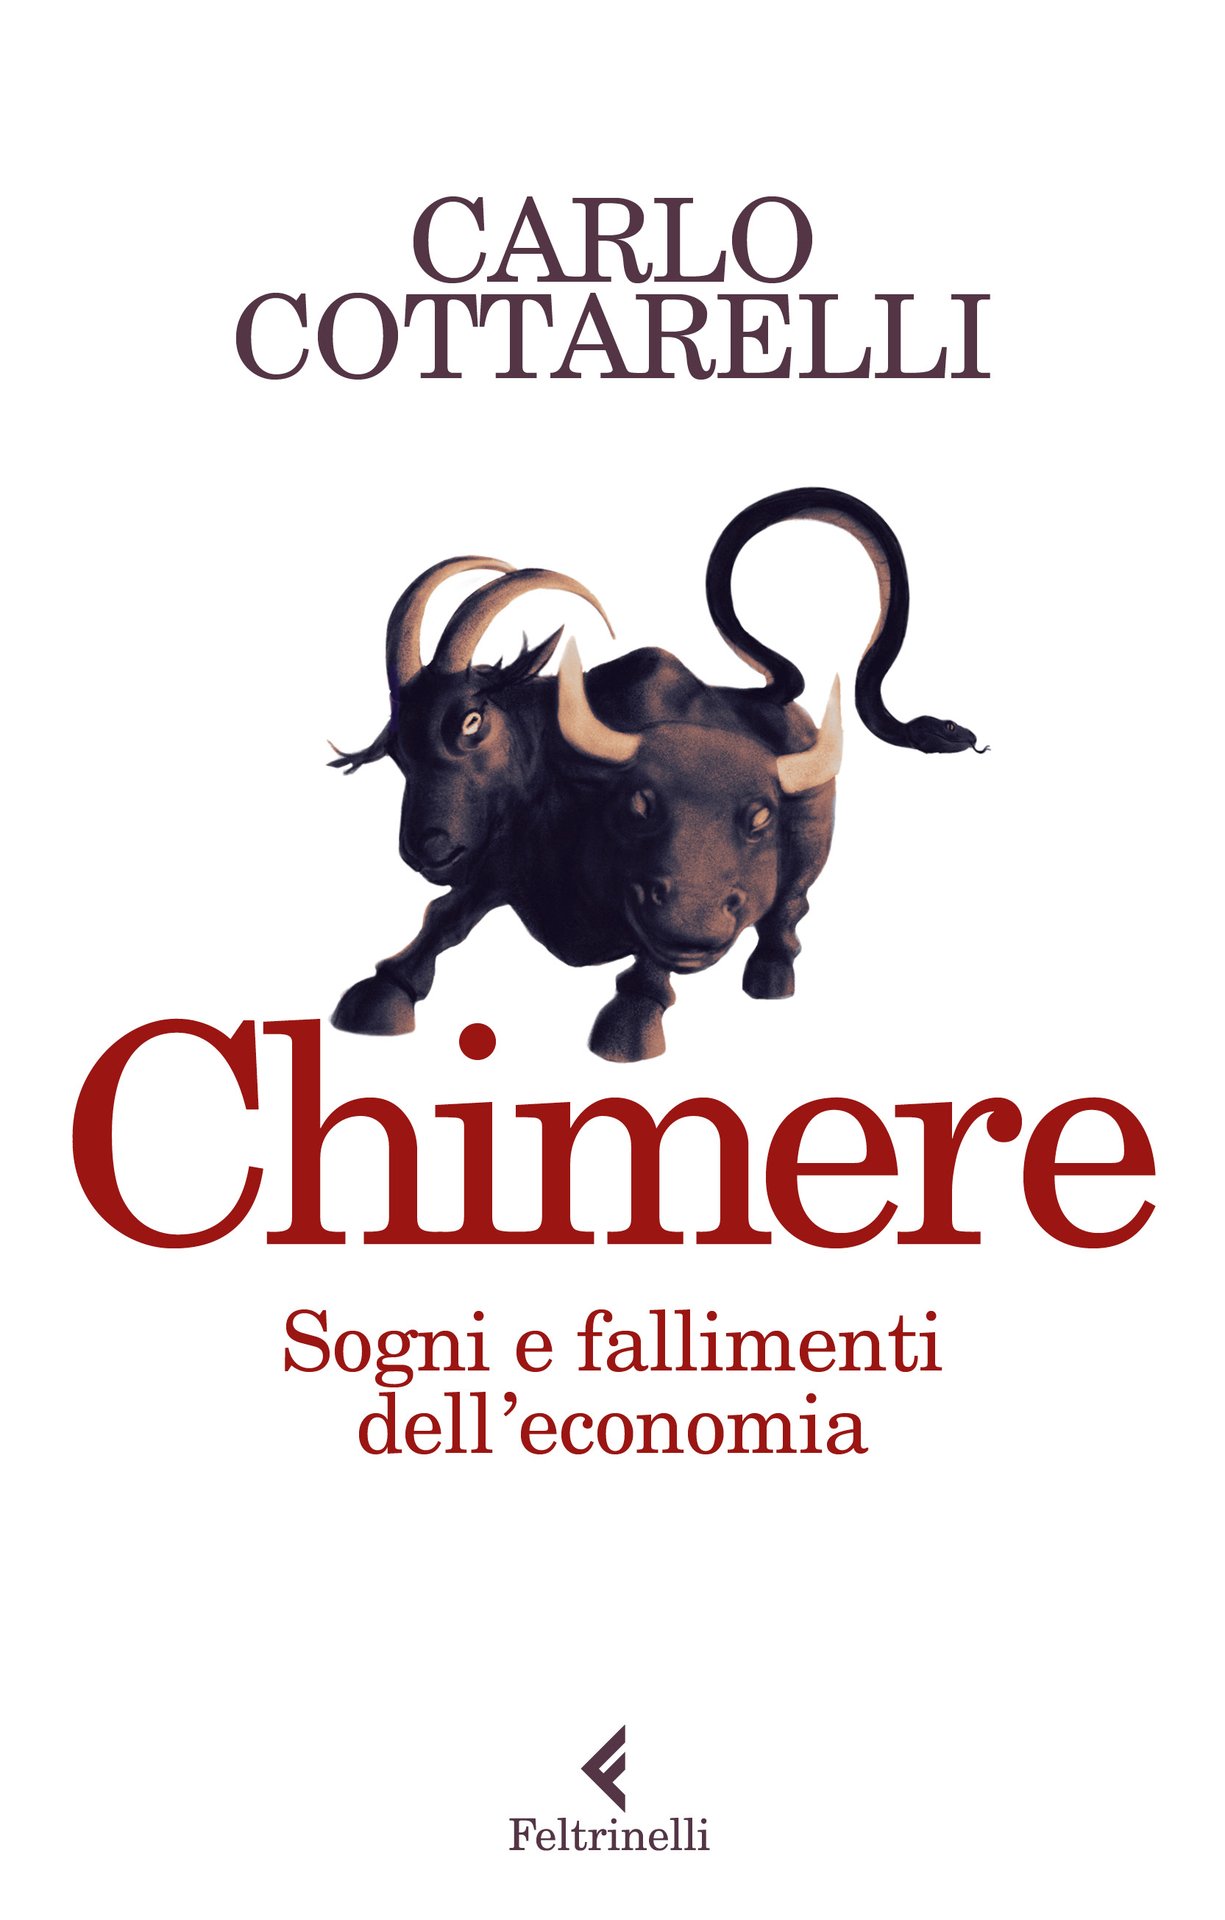 Carlo Cottarelli e le Chimere dell’economia